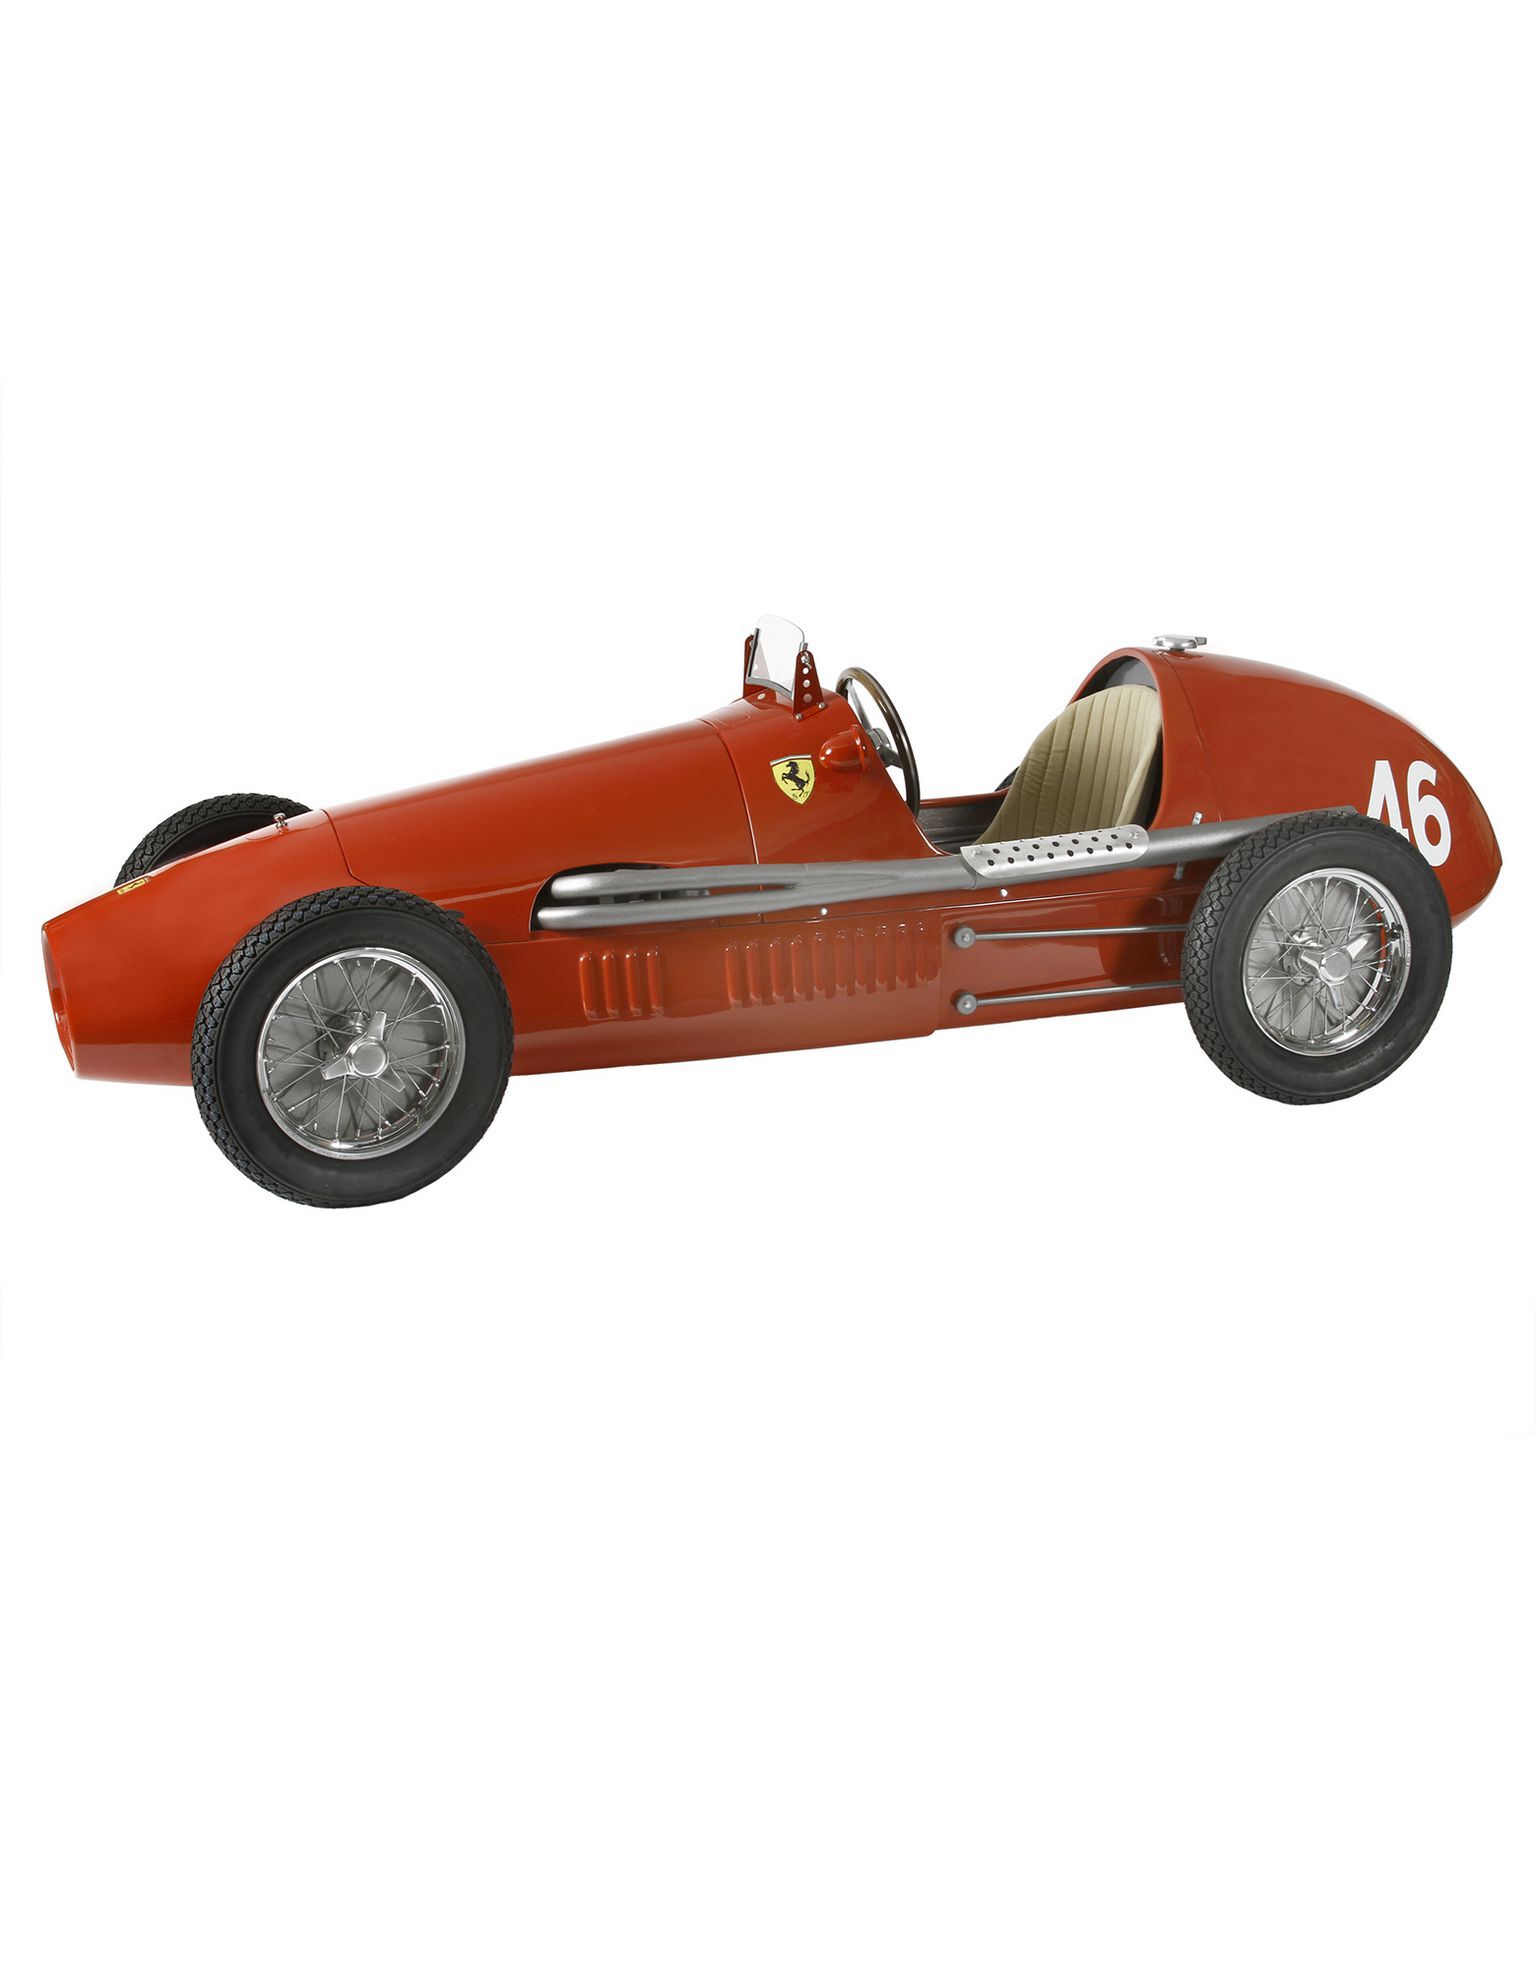 Ferrari 法拉利 F500 F2 1:1.8 模型 多色 43169f